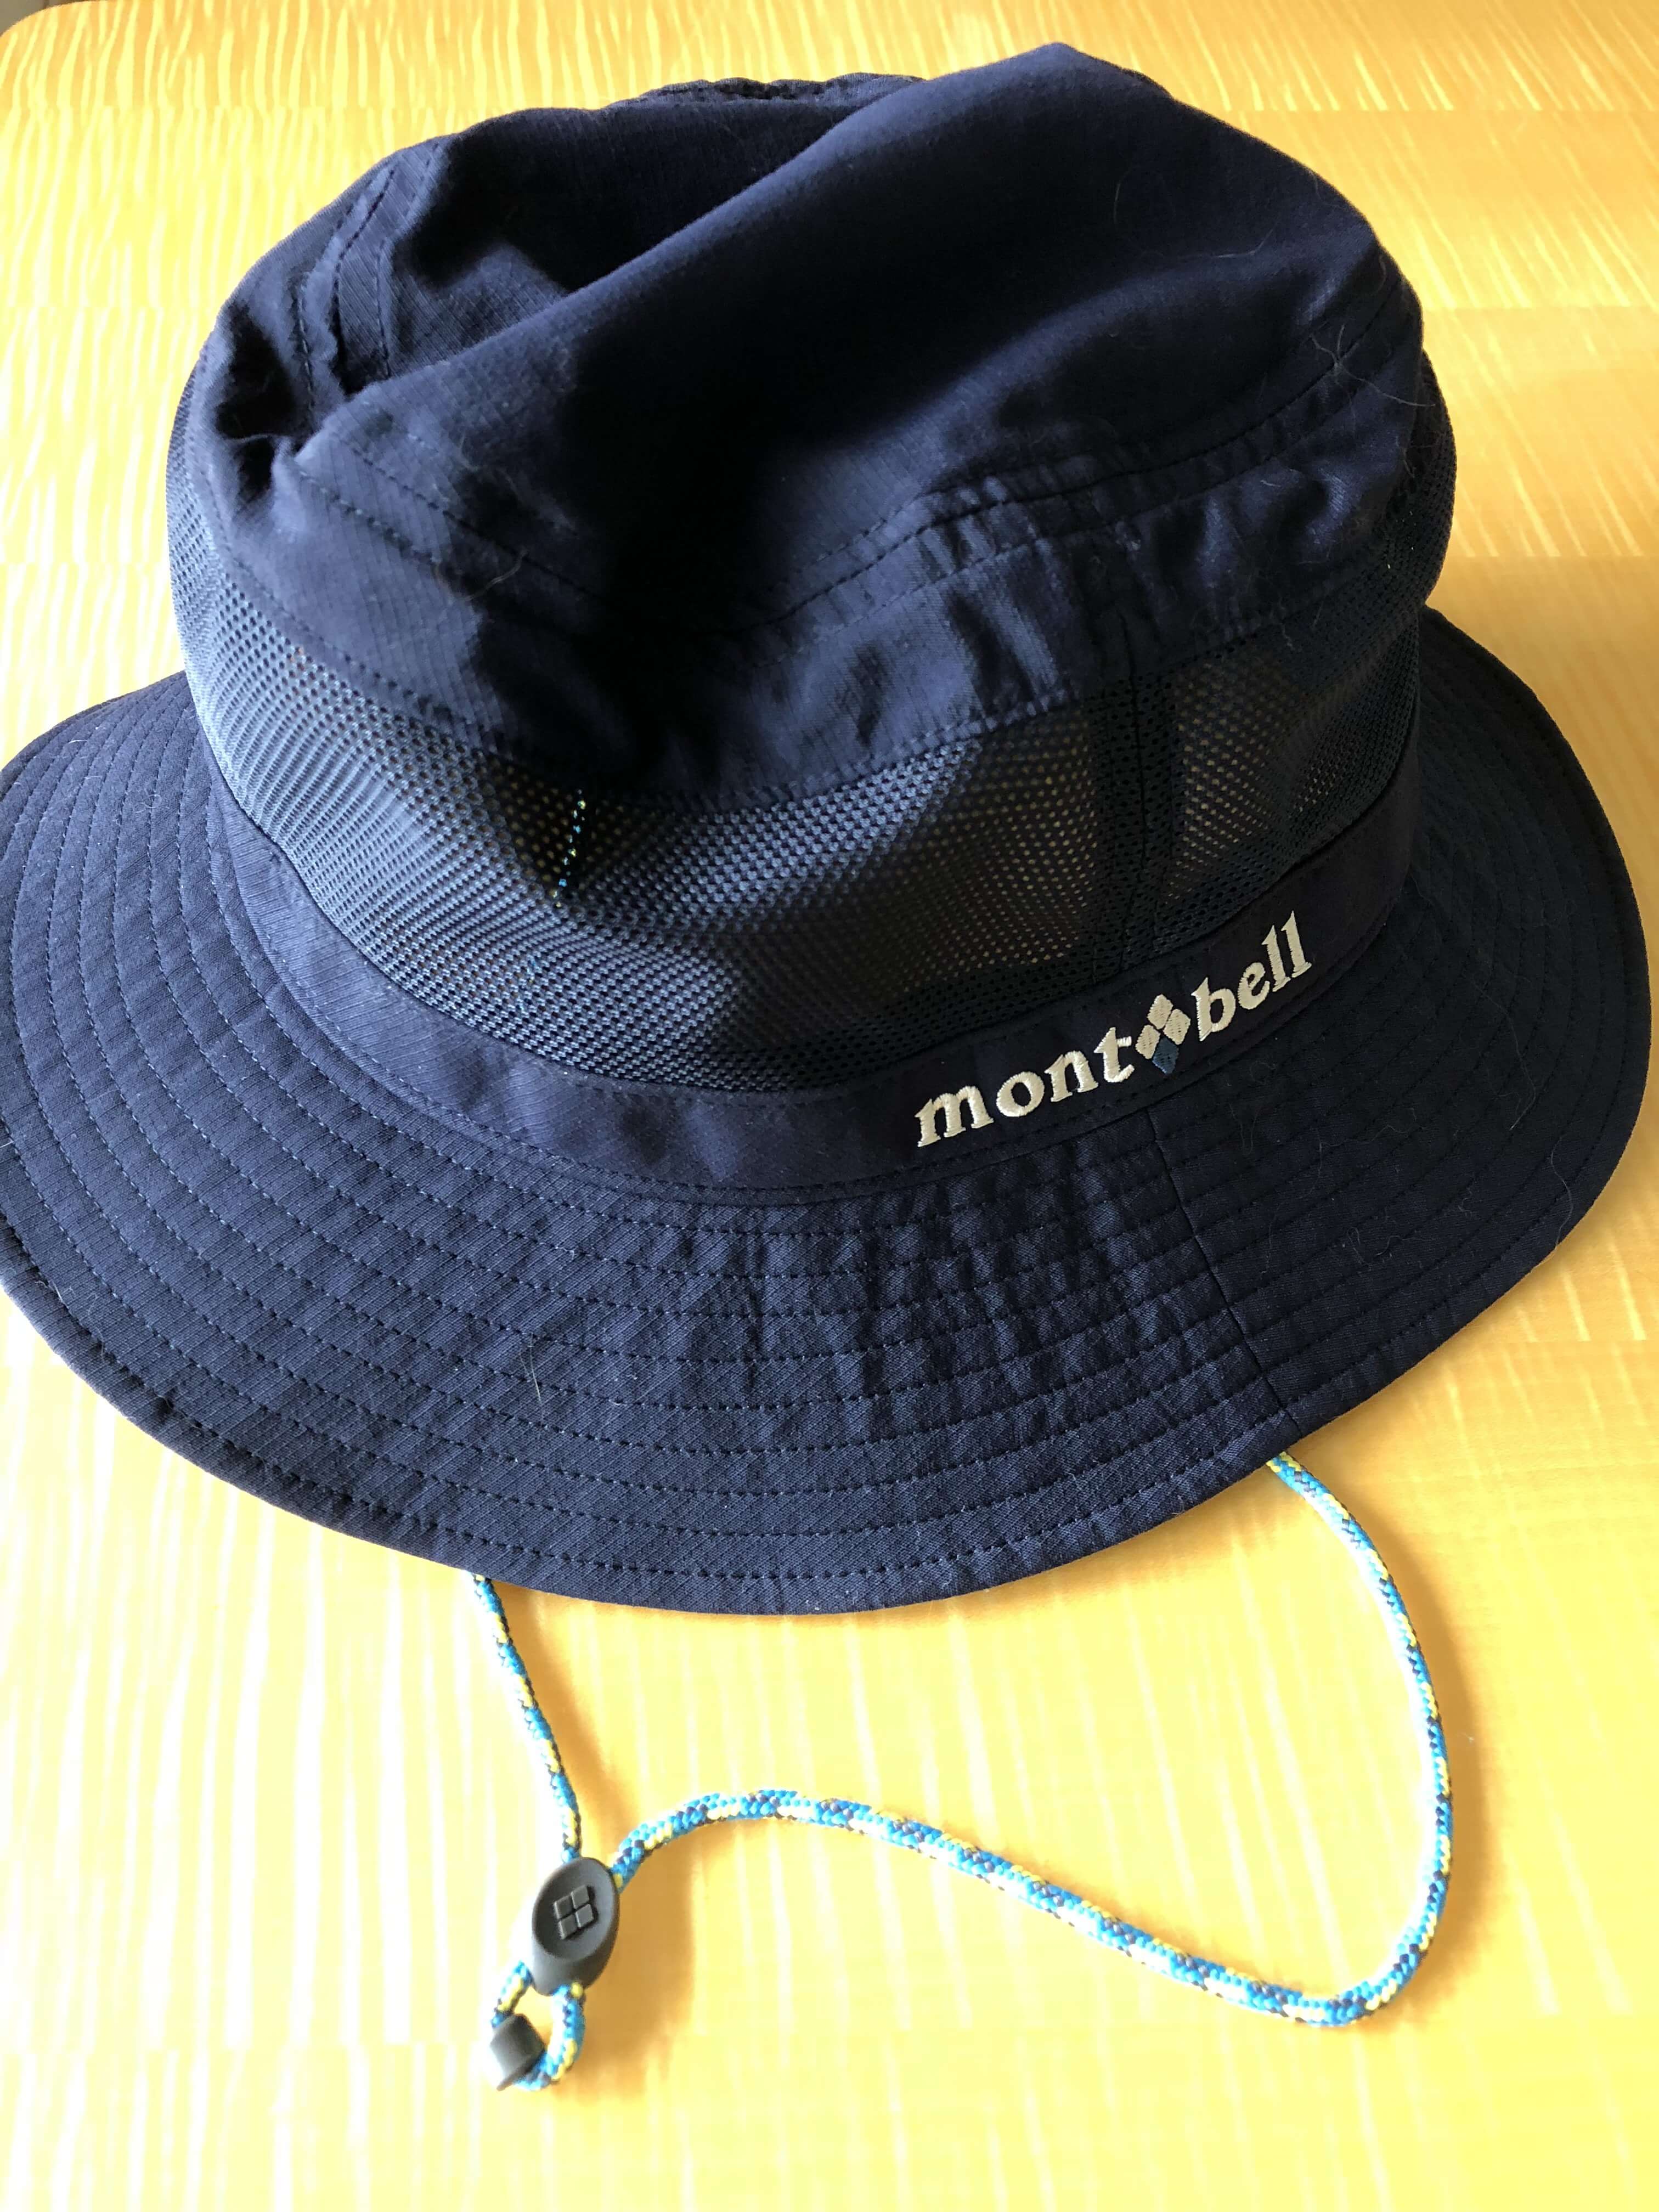 モンベル 男性用 登山用の帽子レビュー 首紐がアレンジできて個性的 Praise Nature